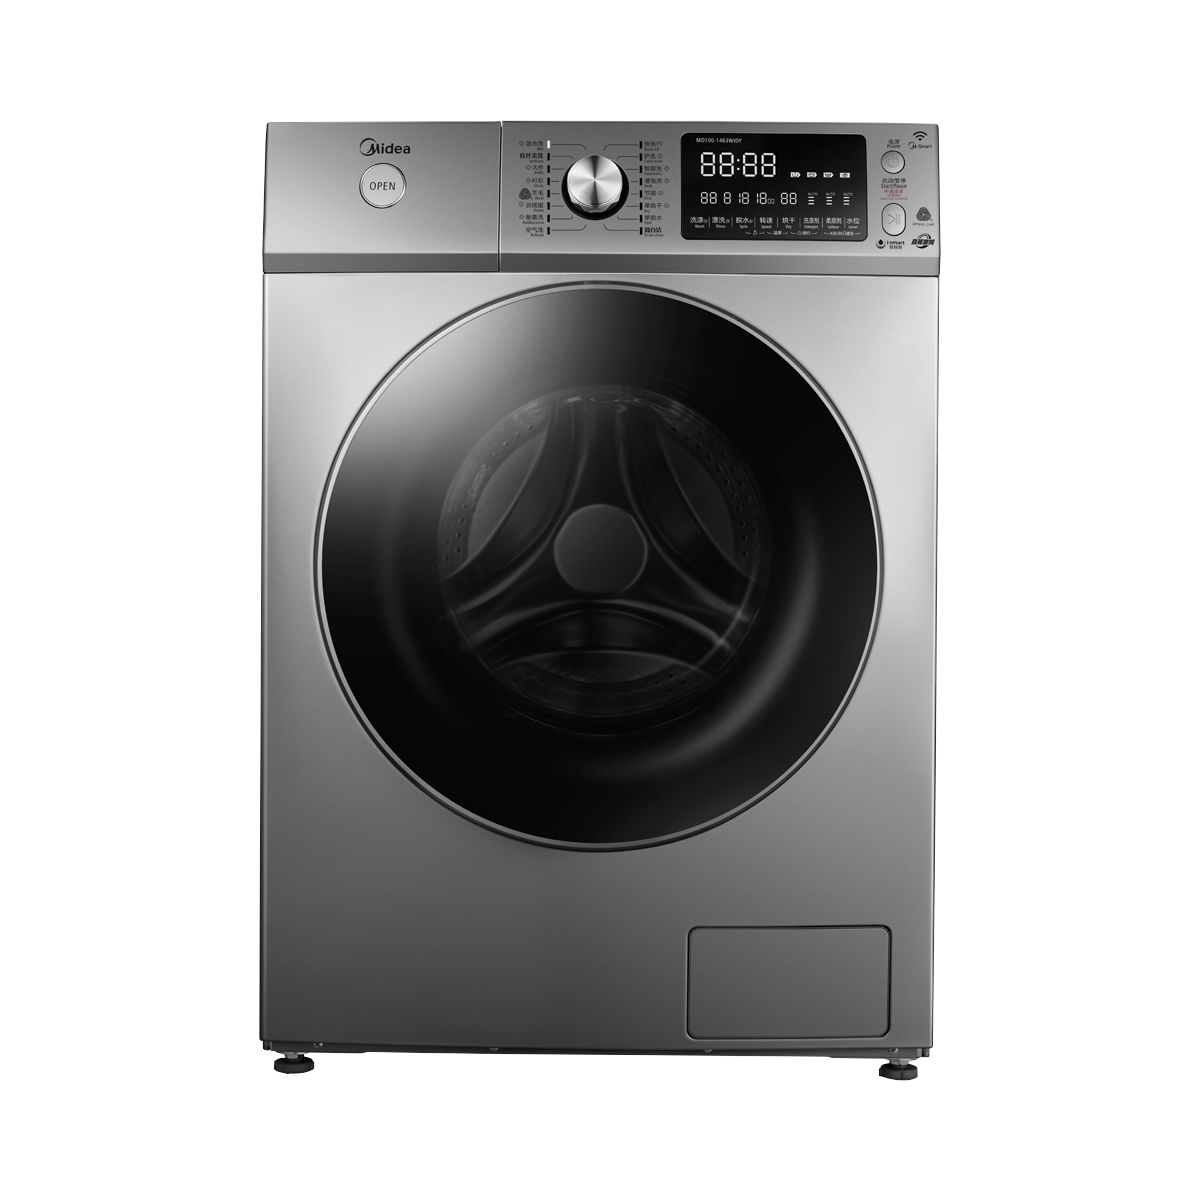 Midea/美的 MD100-1463WIDY洗衣机 说明书.pdf